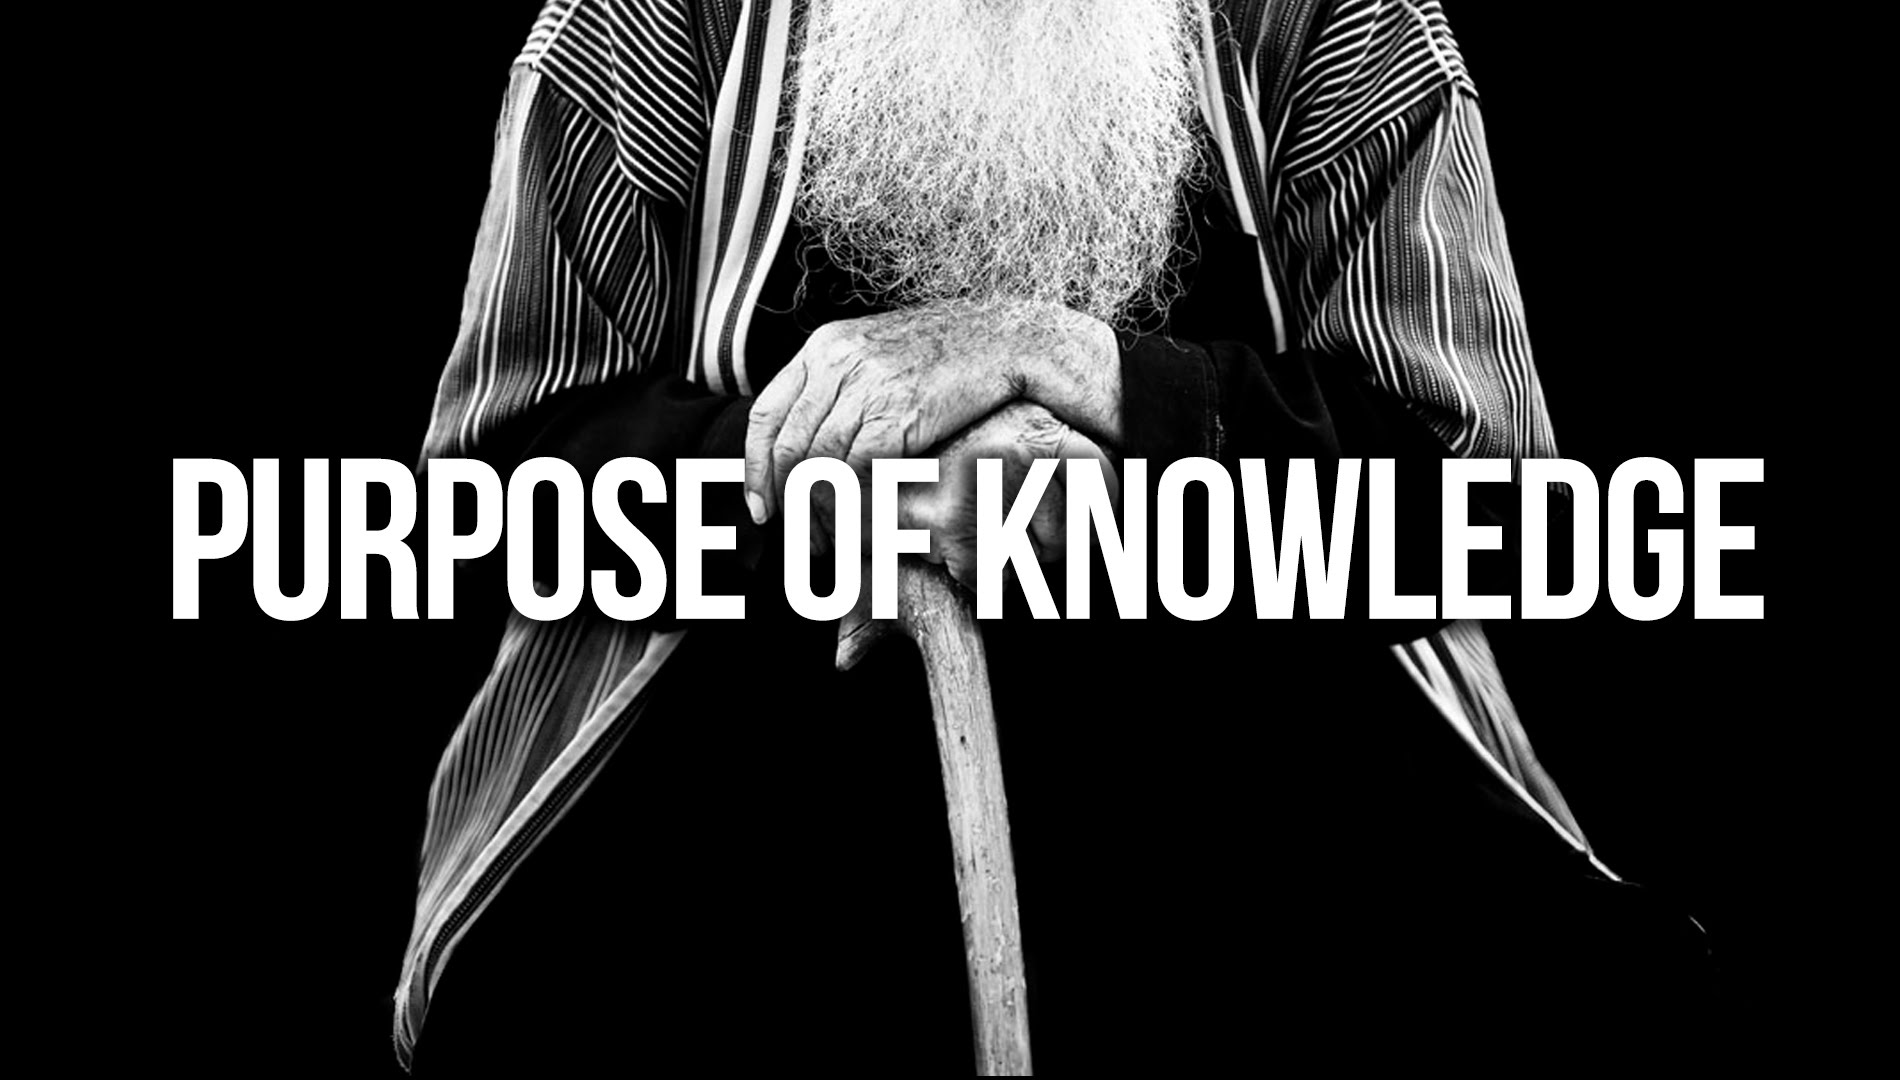 Purpose of Knowledge - Saad Tasleem